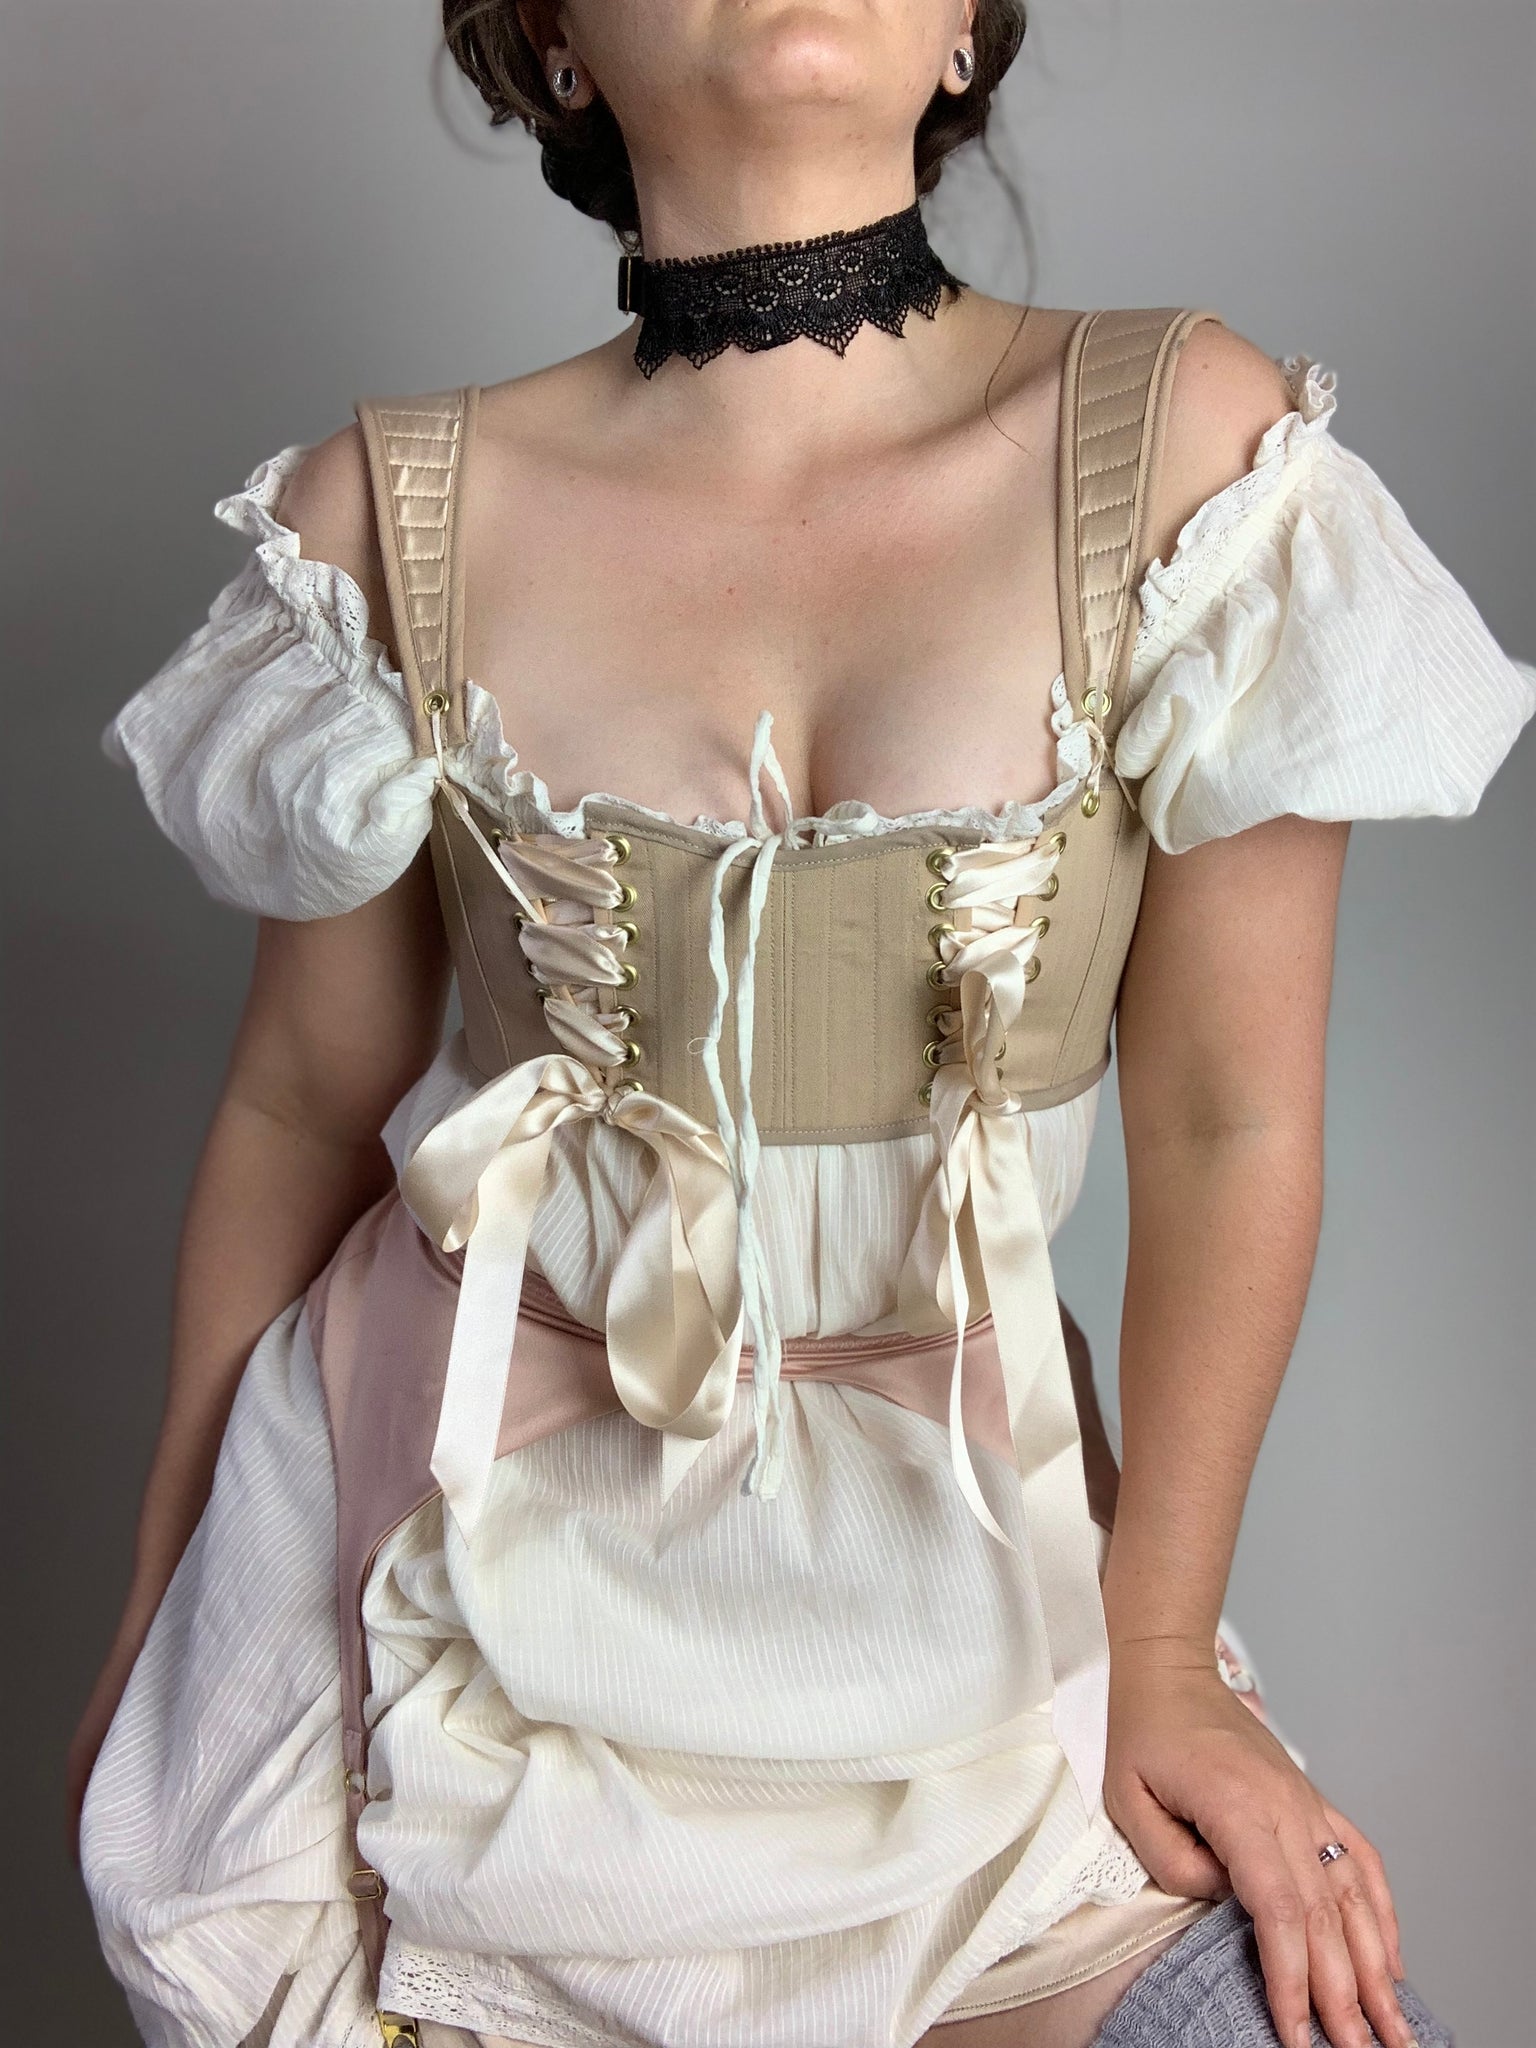 corset story you've done it again 😍😍 #corsetstory #bridgerton #loves